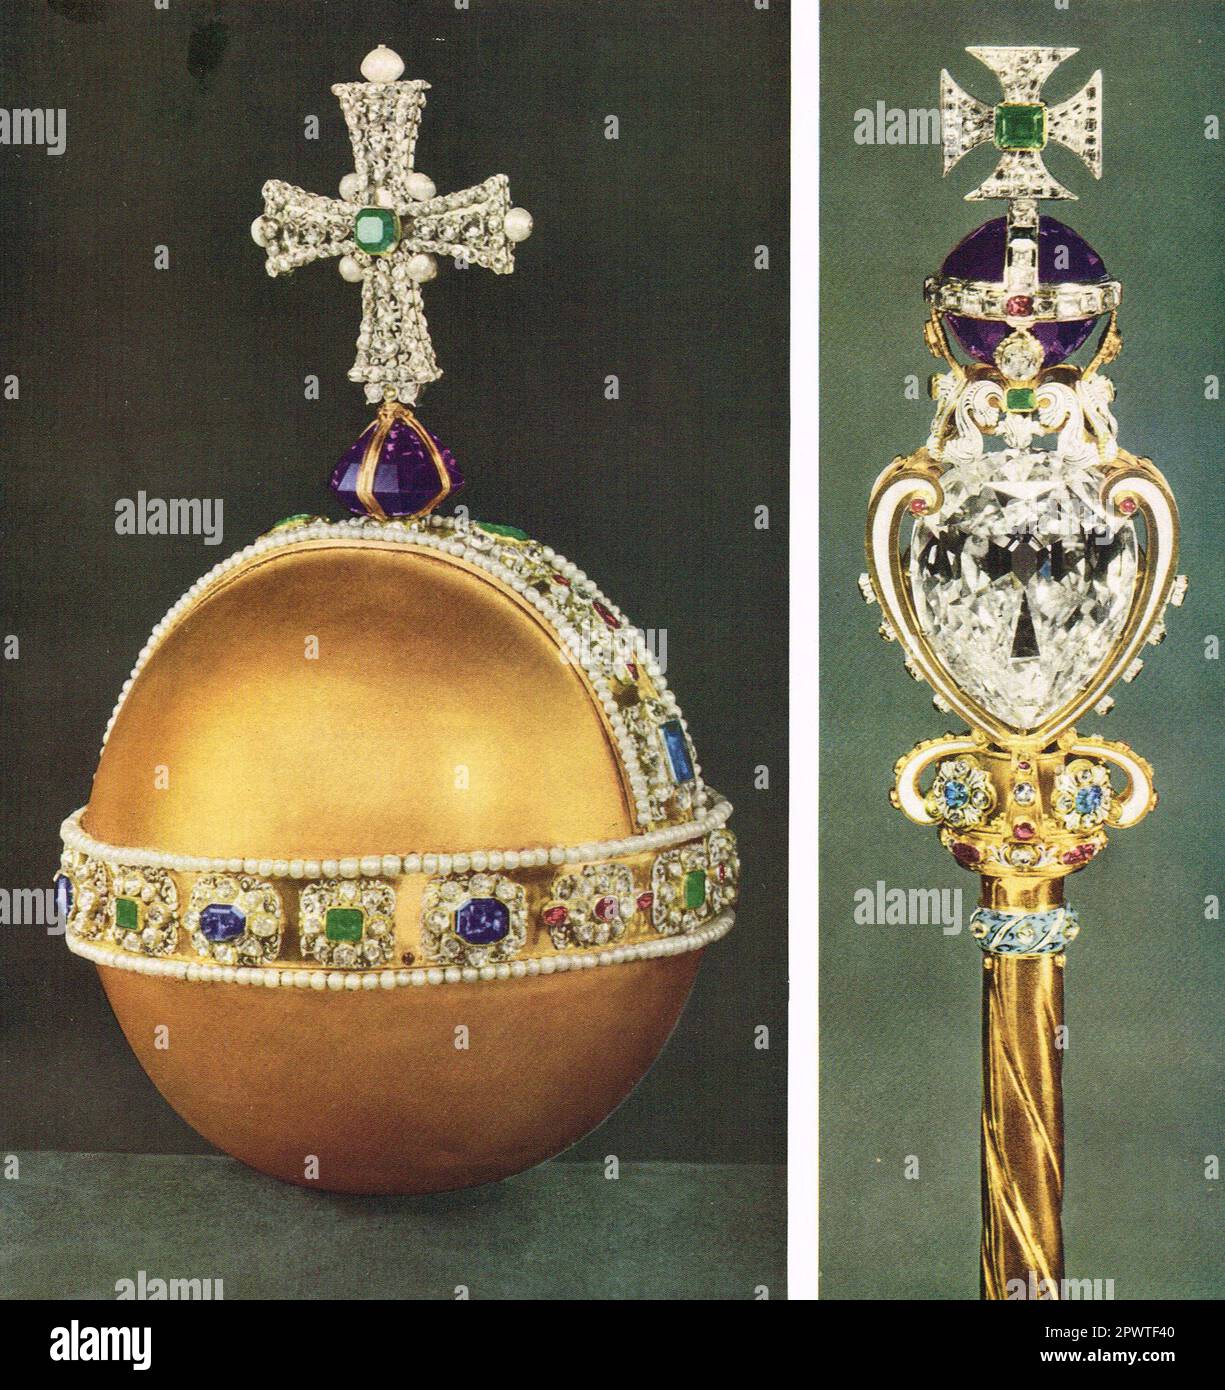 Incoronazione regalia. L'Orb e lo scettro reale con croce. Crown Jewels del Regno Unito. Lo scettro è un simbolo di potere regale e di giustizia, e il globo è ritenuto per significare il dominio della chiesa cristiana sul mondo. Foto Stock